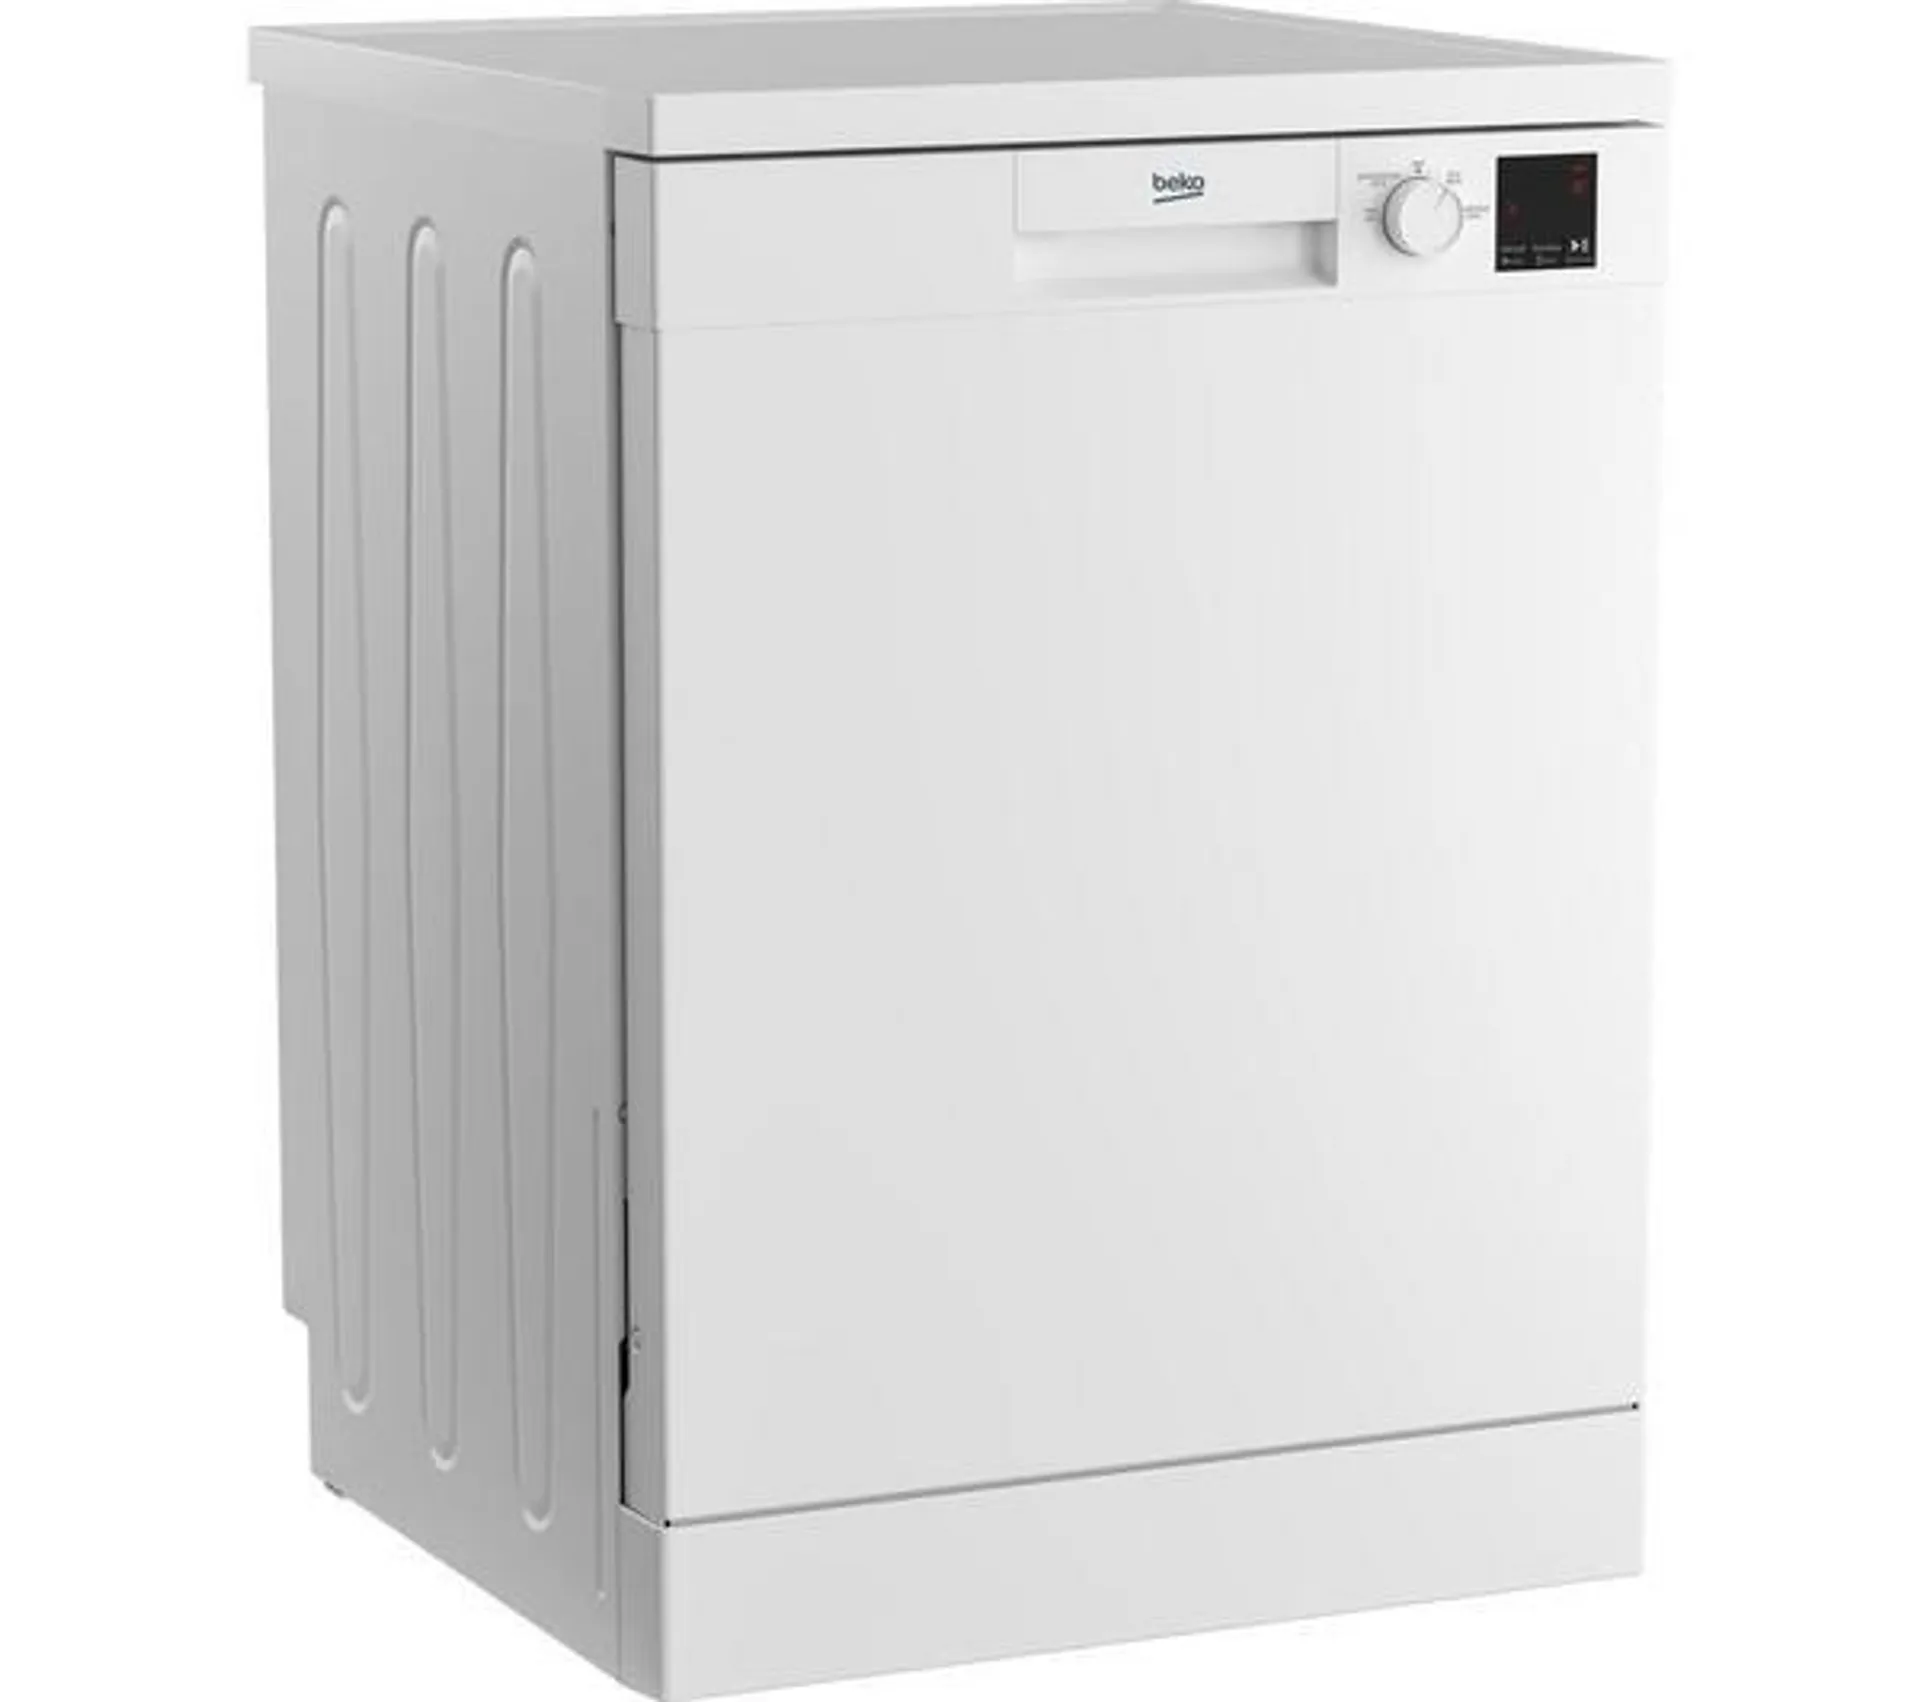 BEKO DVN04X20W Full-size Dishwasher - White